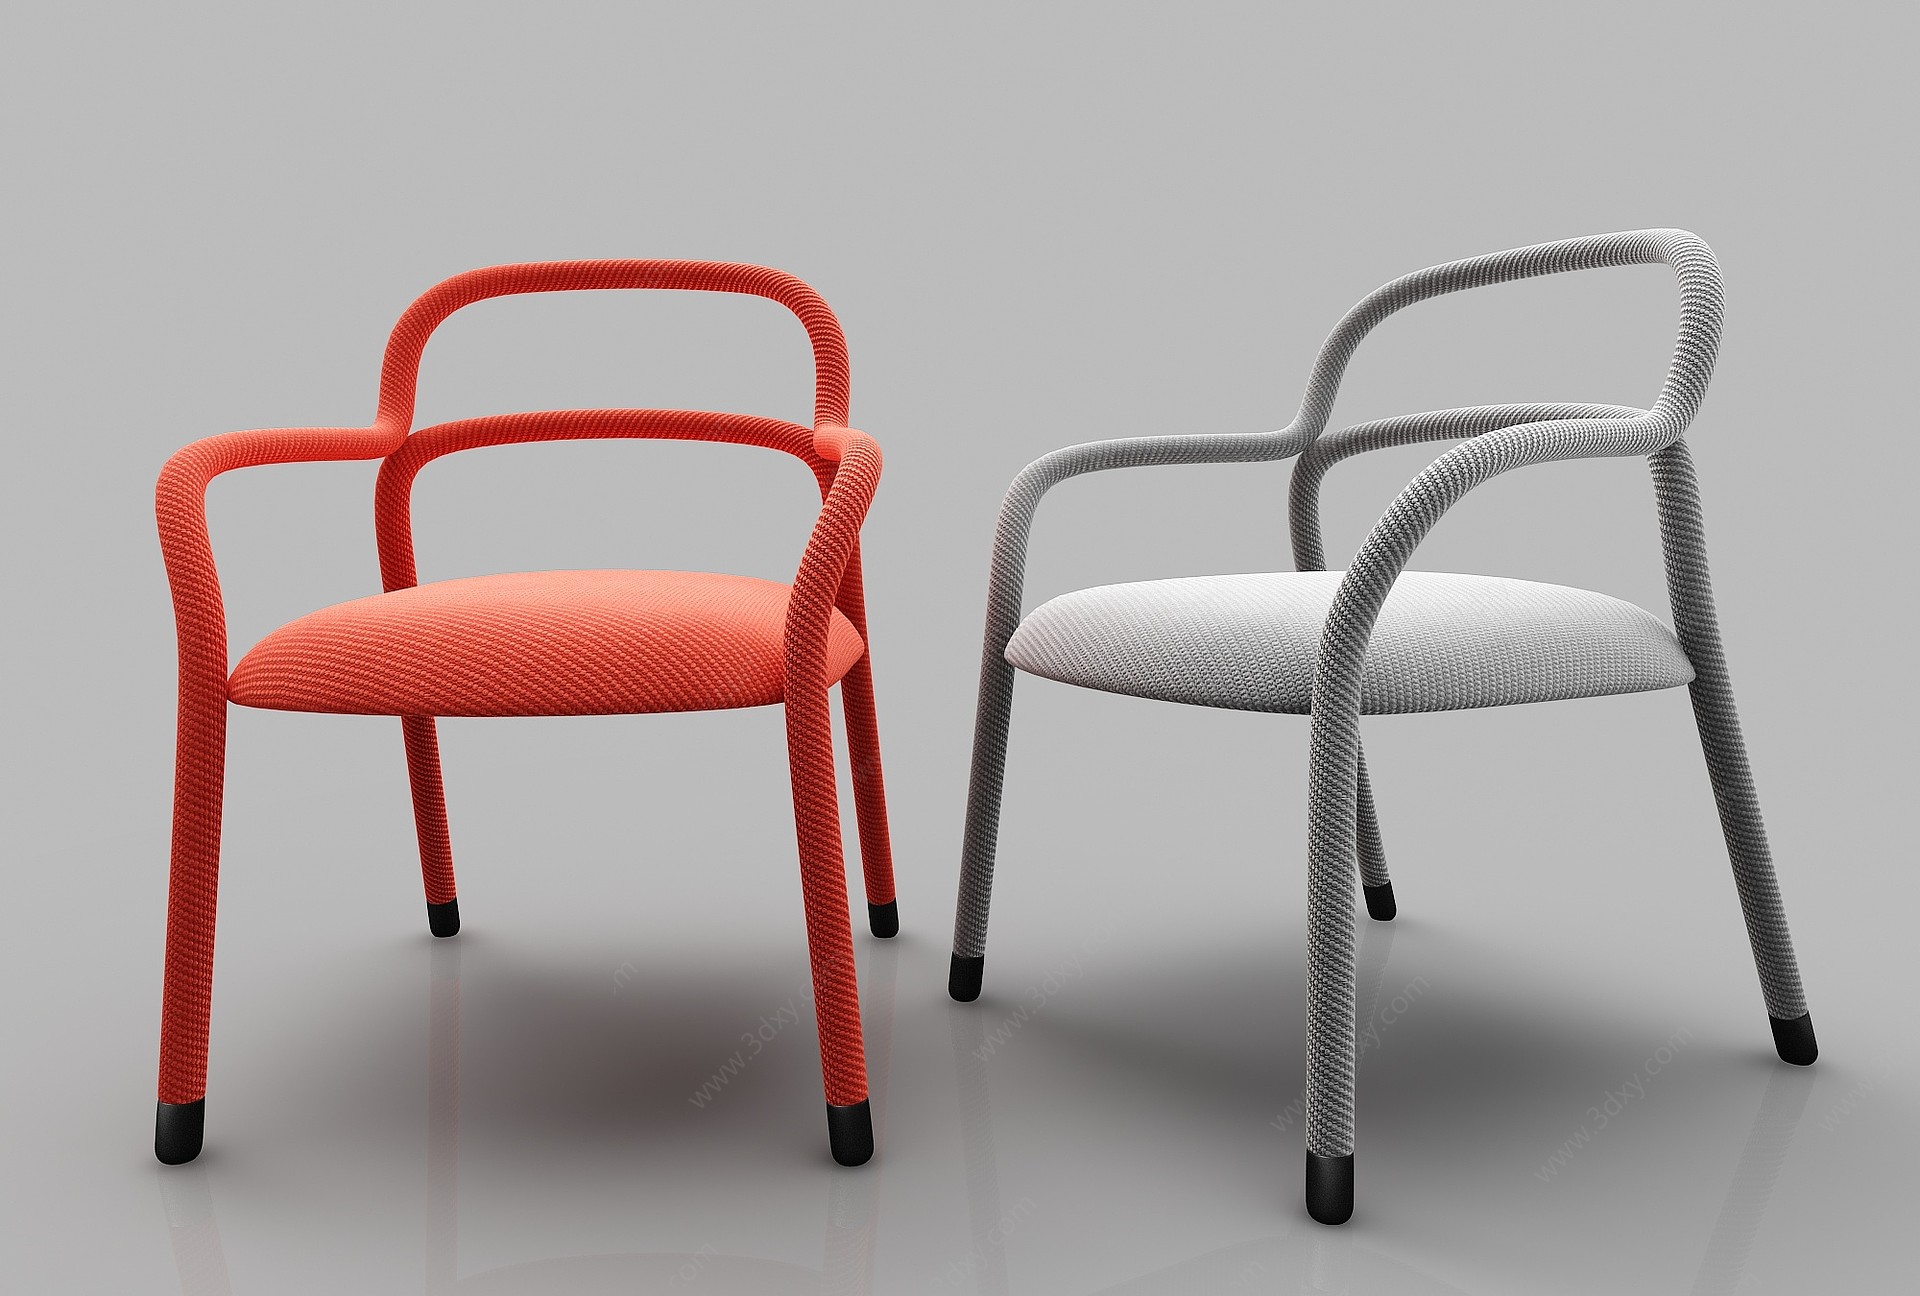 现代风格休闲沙发3D模型